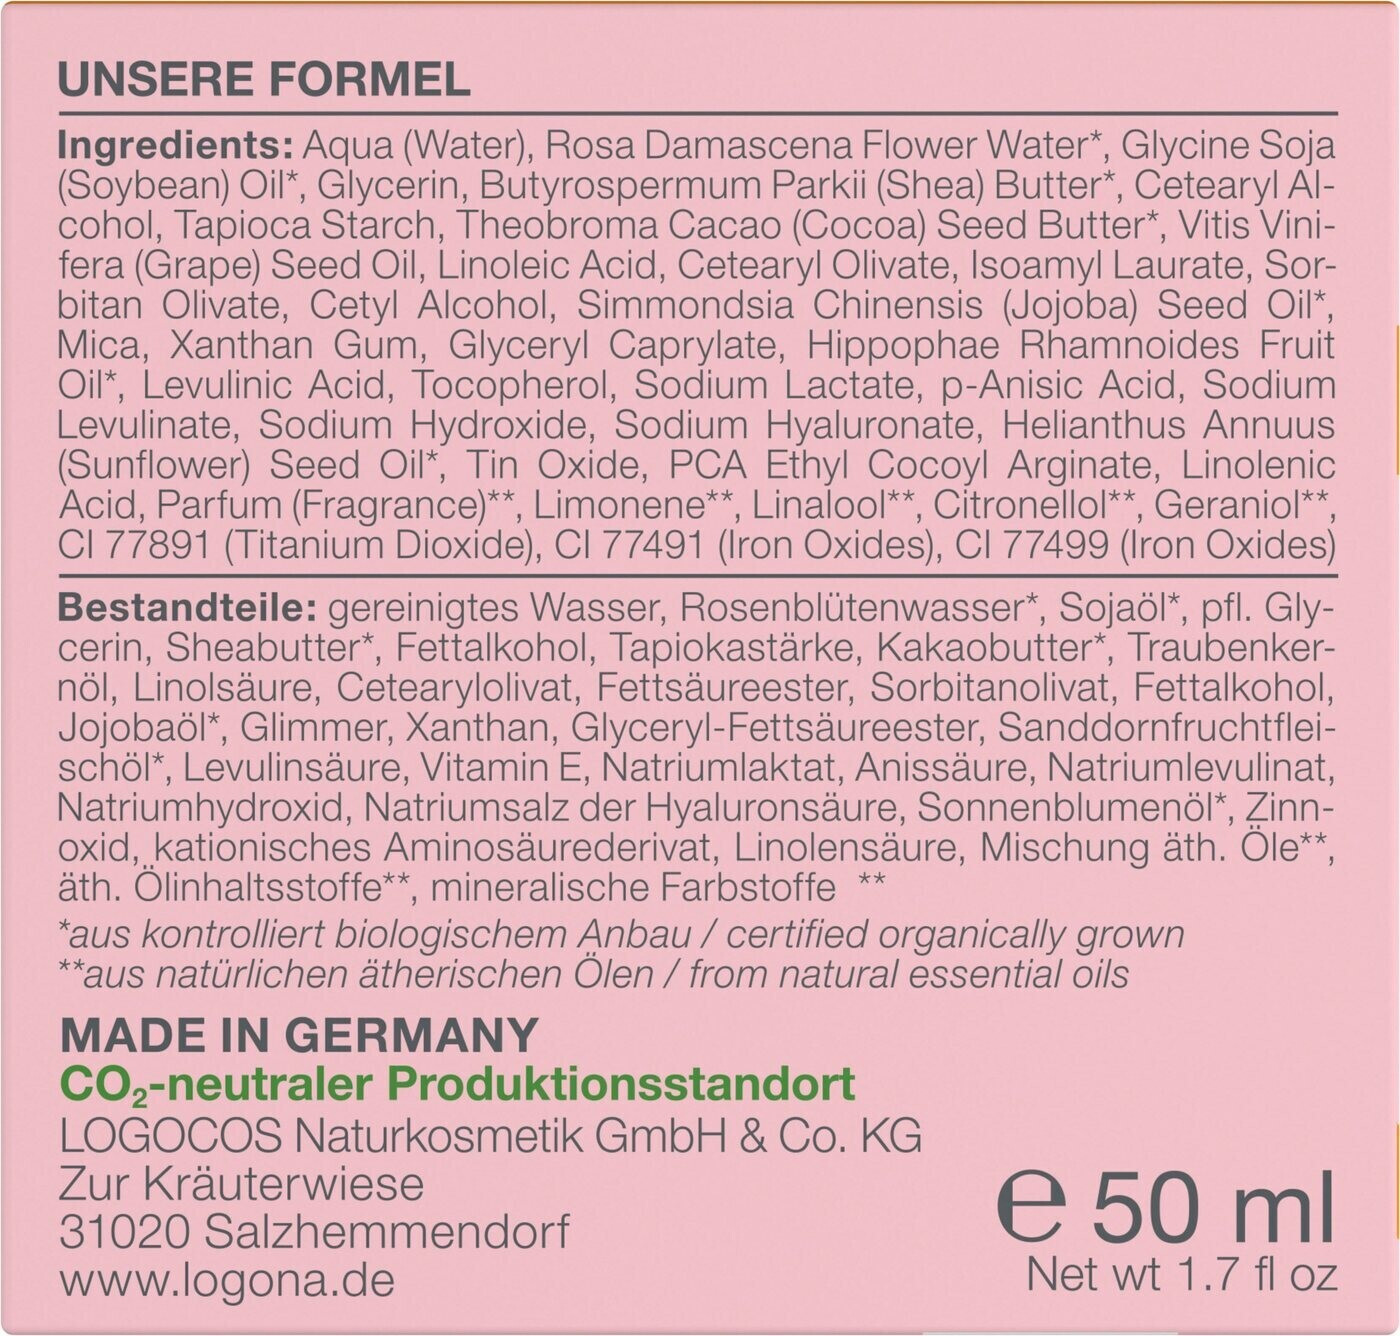 Festigende bei Teint Tagescreme Frischer Preisvergleich (50ml) Rosig ab Logona | 16,84 €